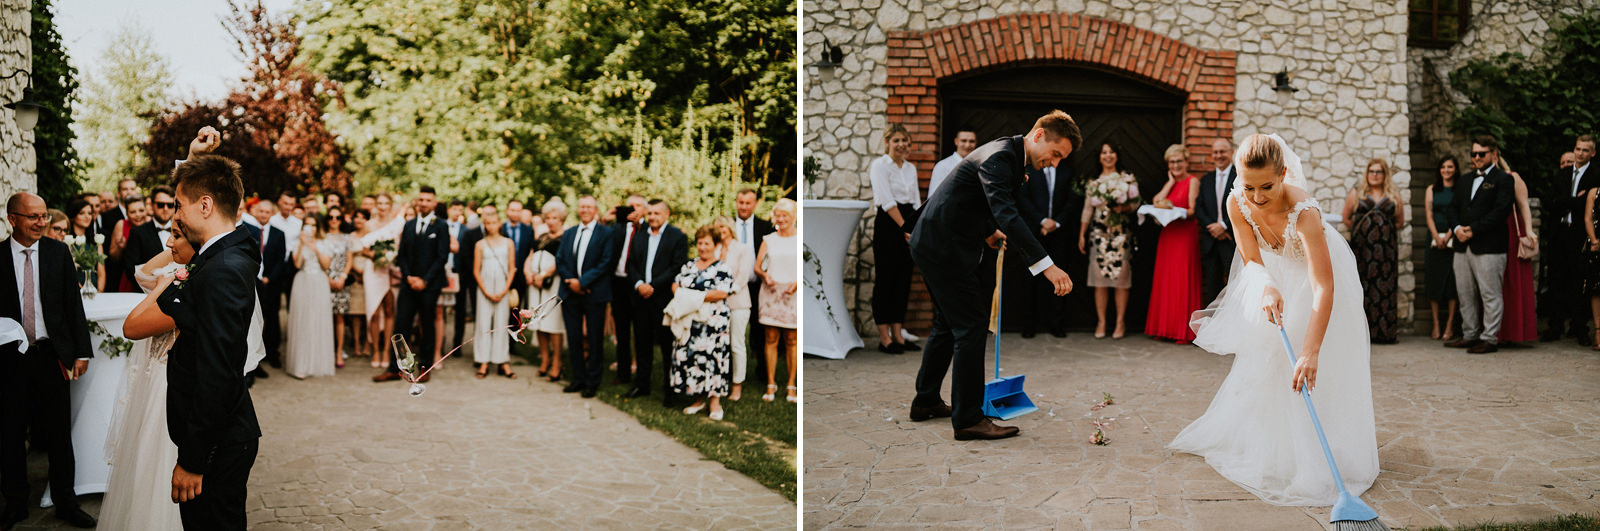 057 dwor w tomaszowicach wesele krakow slub koscielny ruczaj karol nycz fotograf slubny krakow